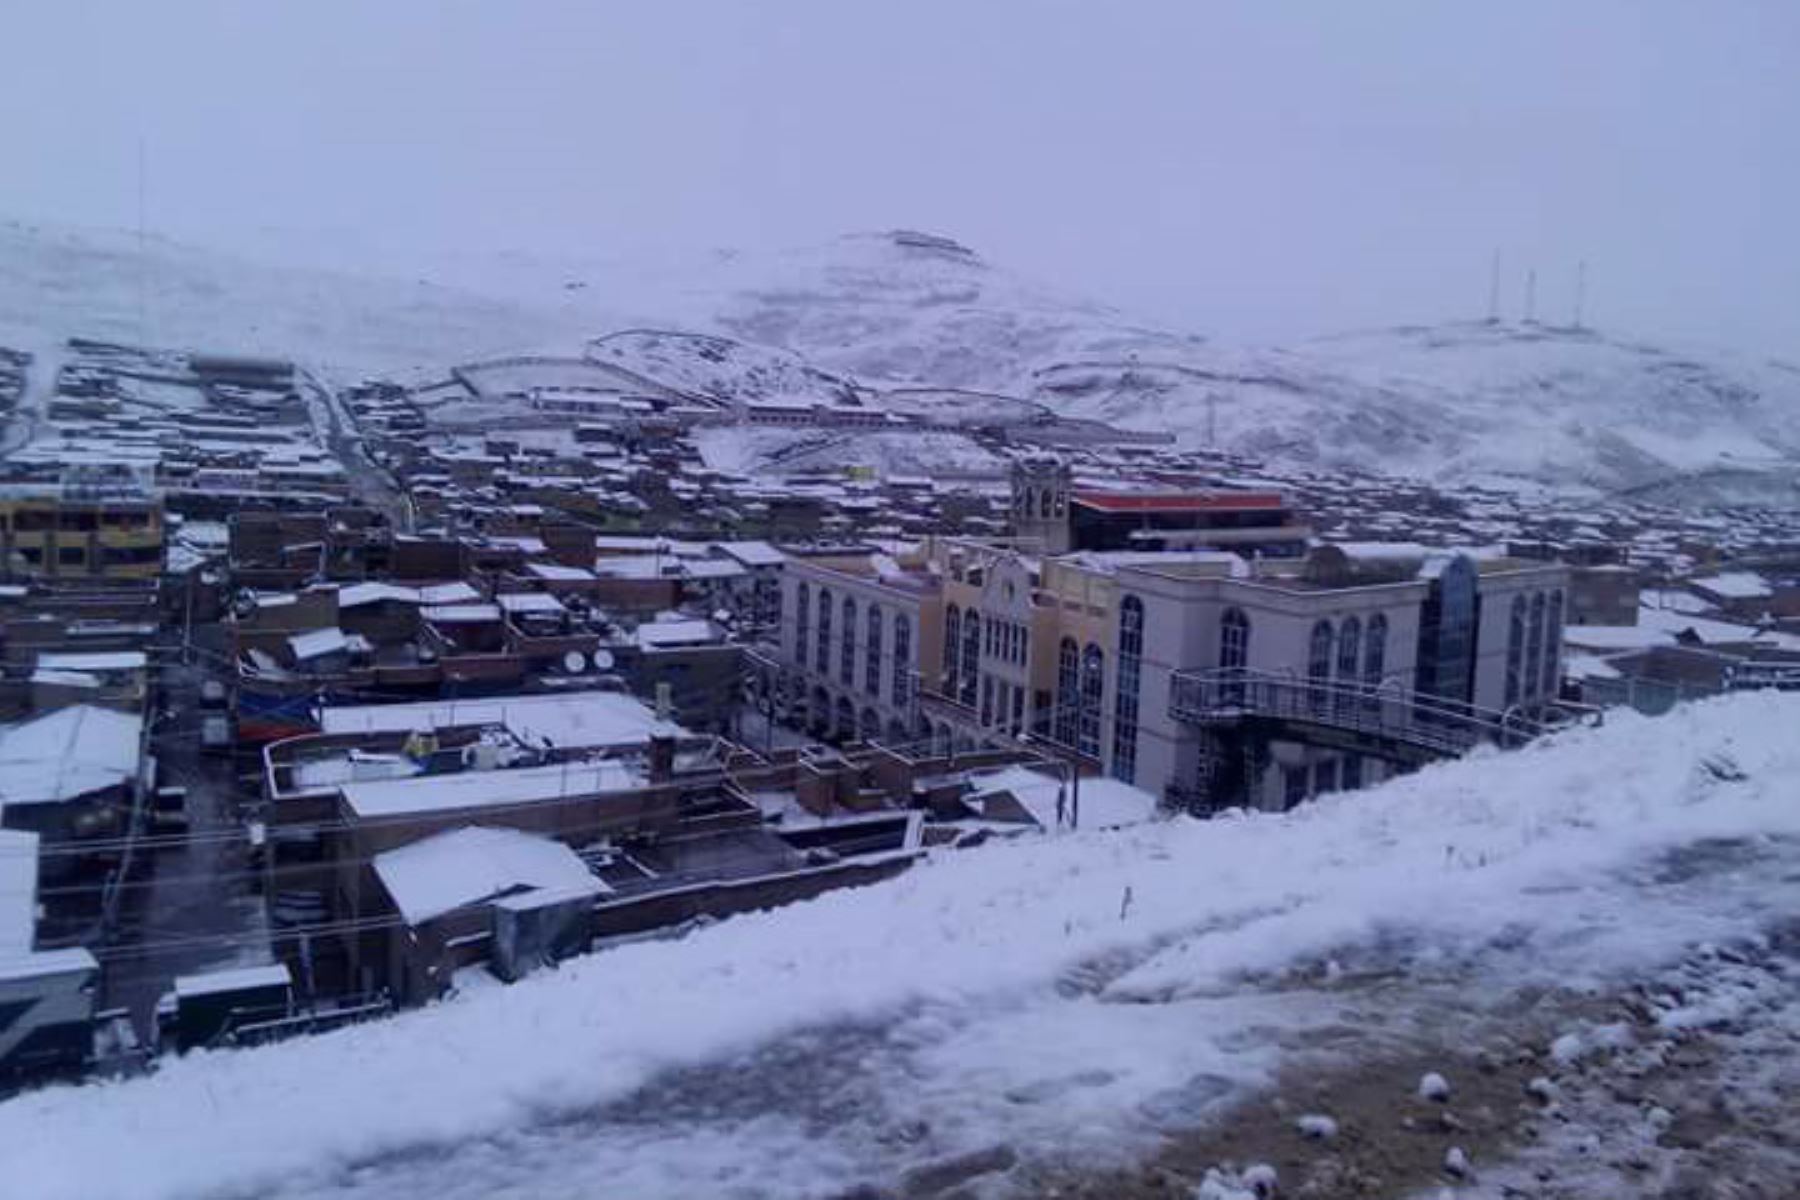 El centro poblado Huaytire, situado a 4,500 metros sobre el nivel, en el distrito y provincia de Candarave, fue una de las localidades más afectadas por la nevada en la región Tacna. Foto: Twitter/@albertoyuyo